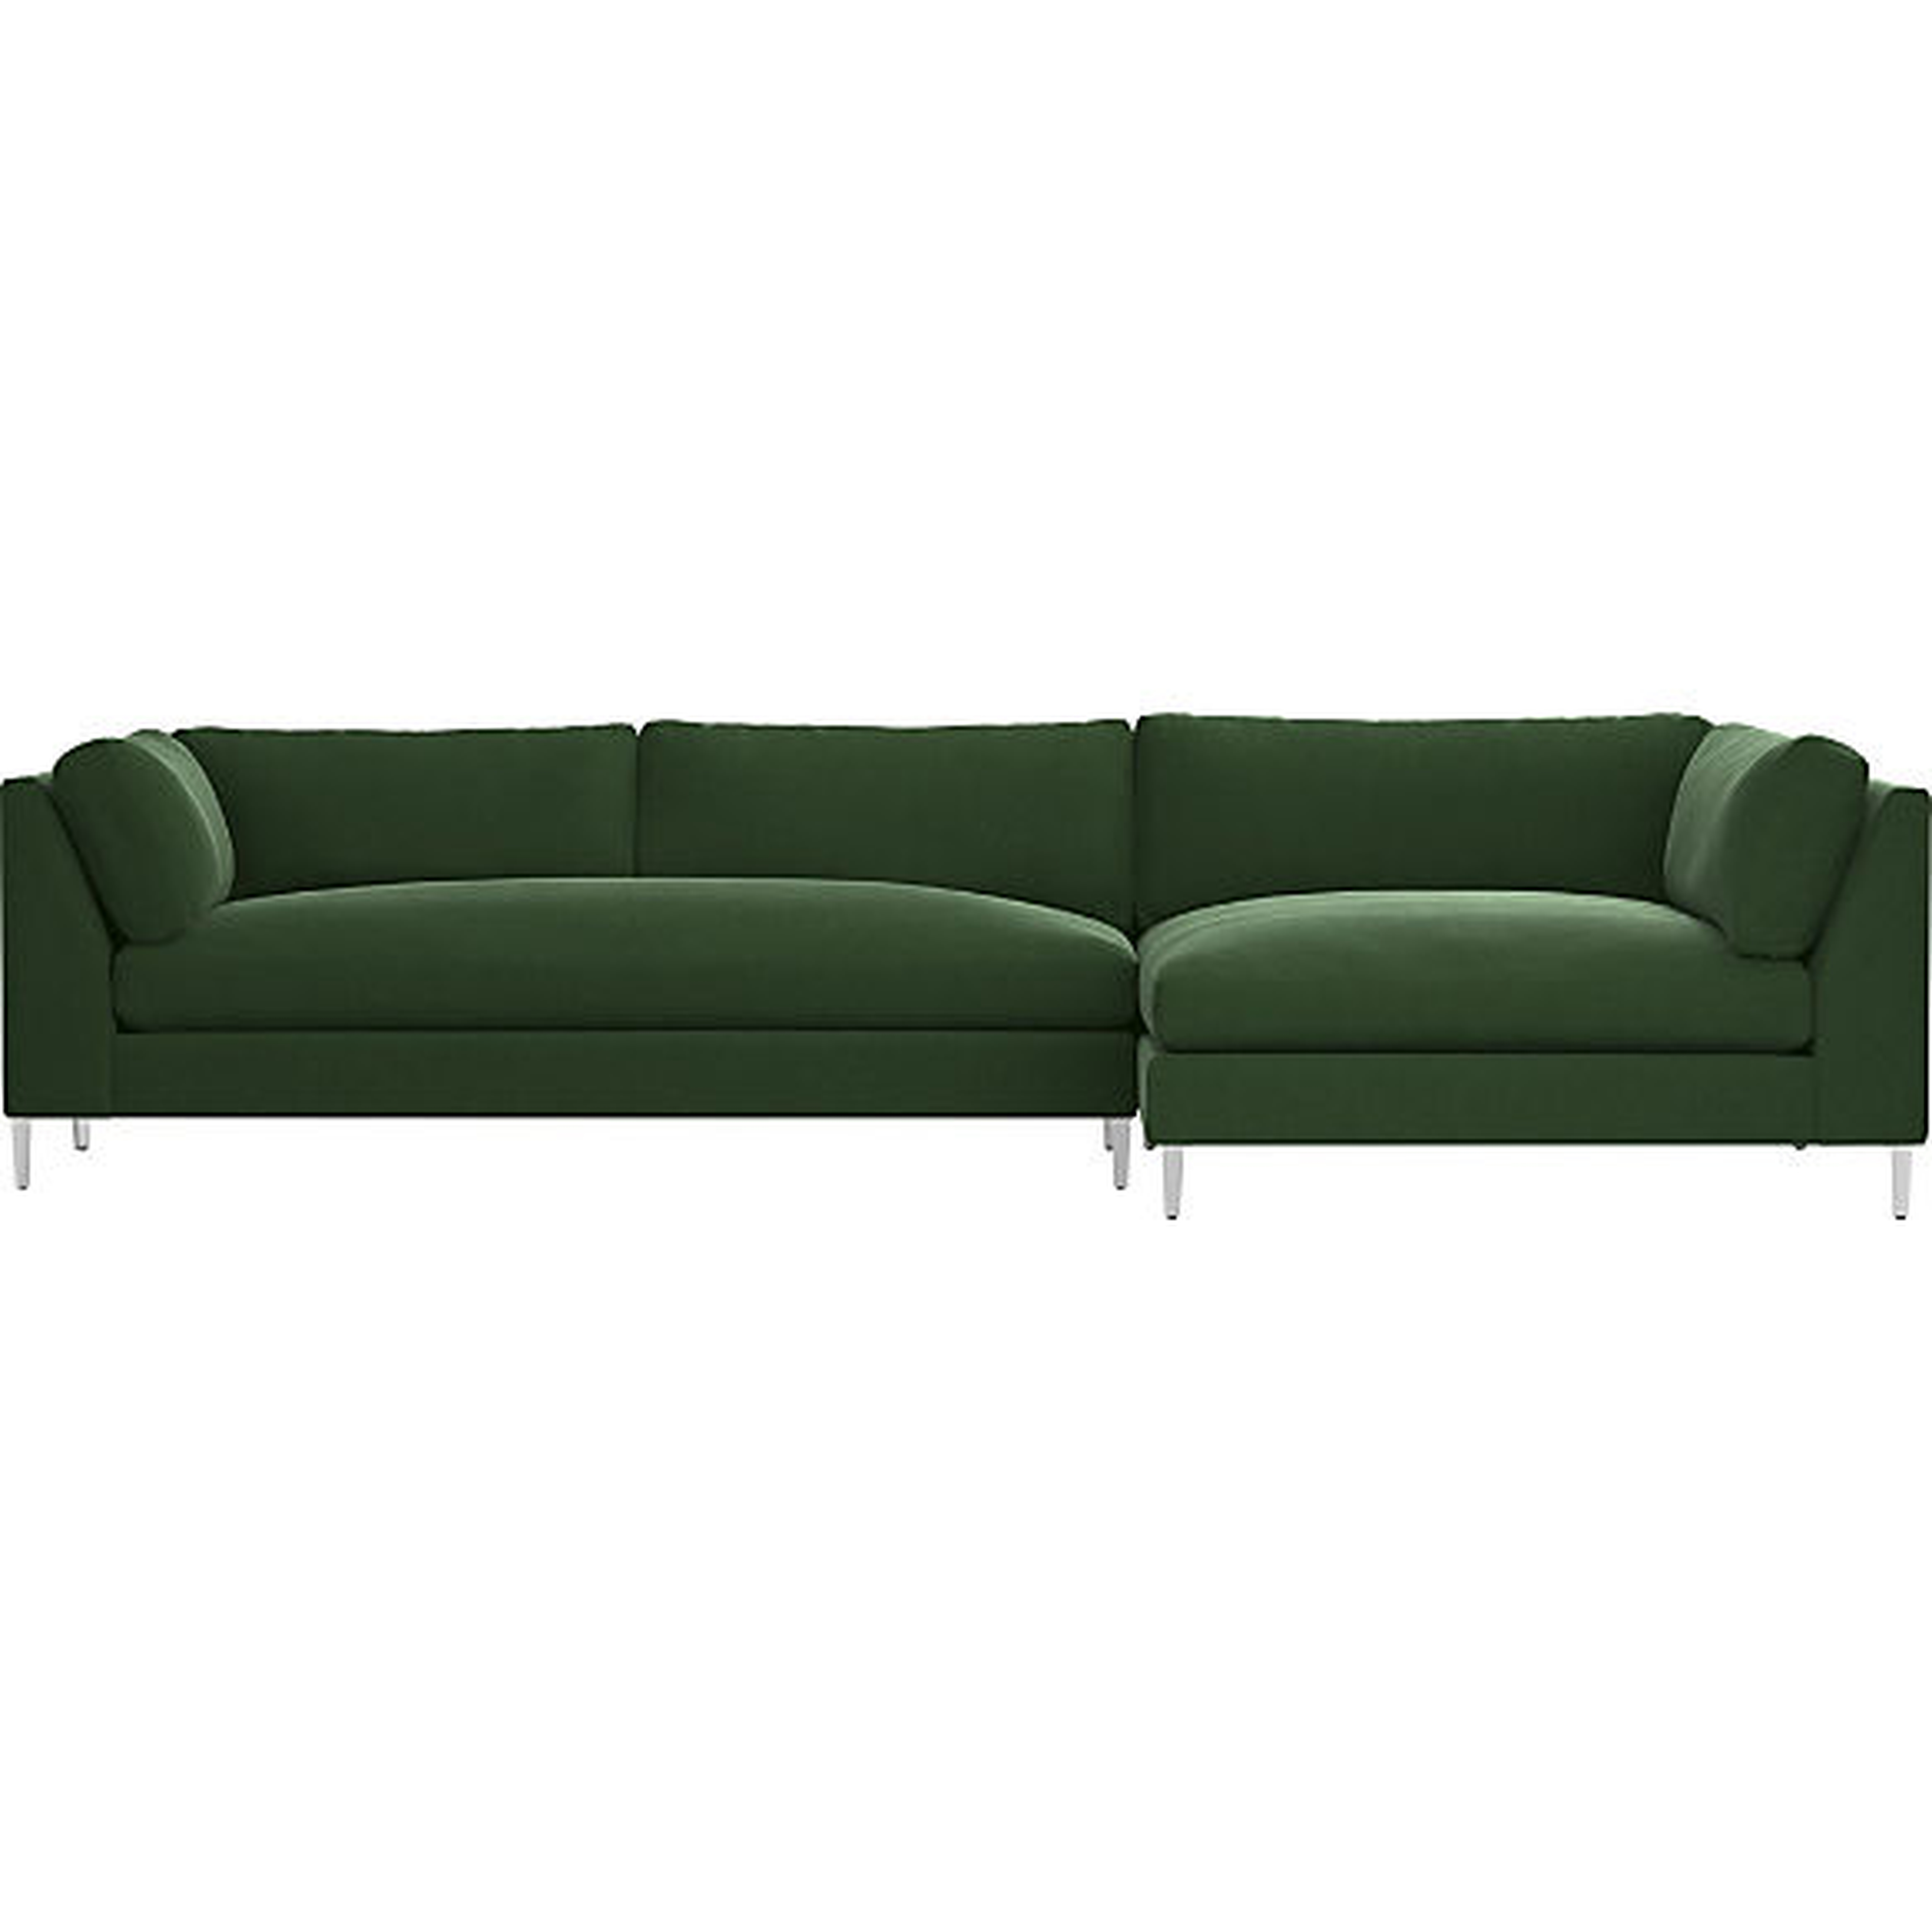 decker 2-piece sectional sofa - como emerald - CB2